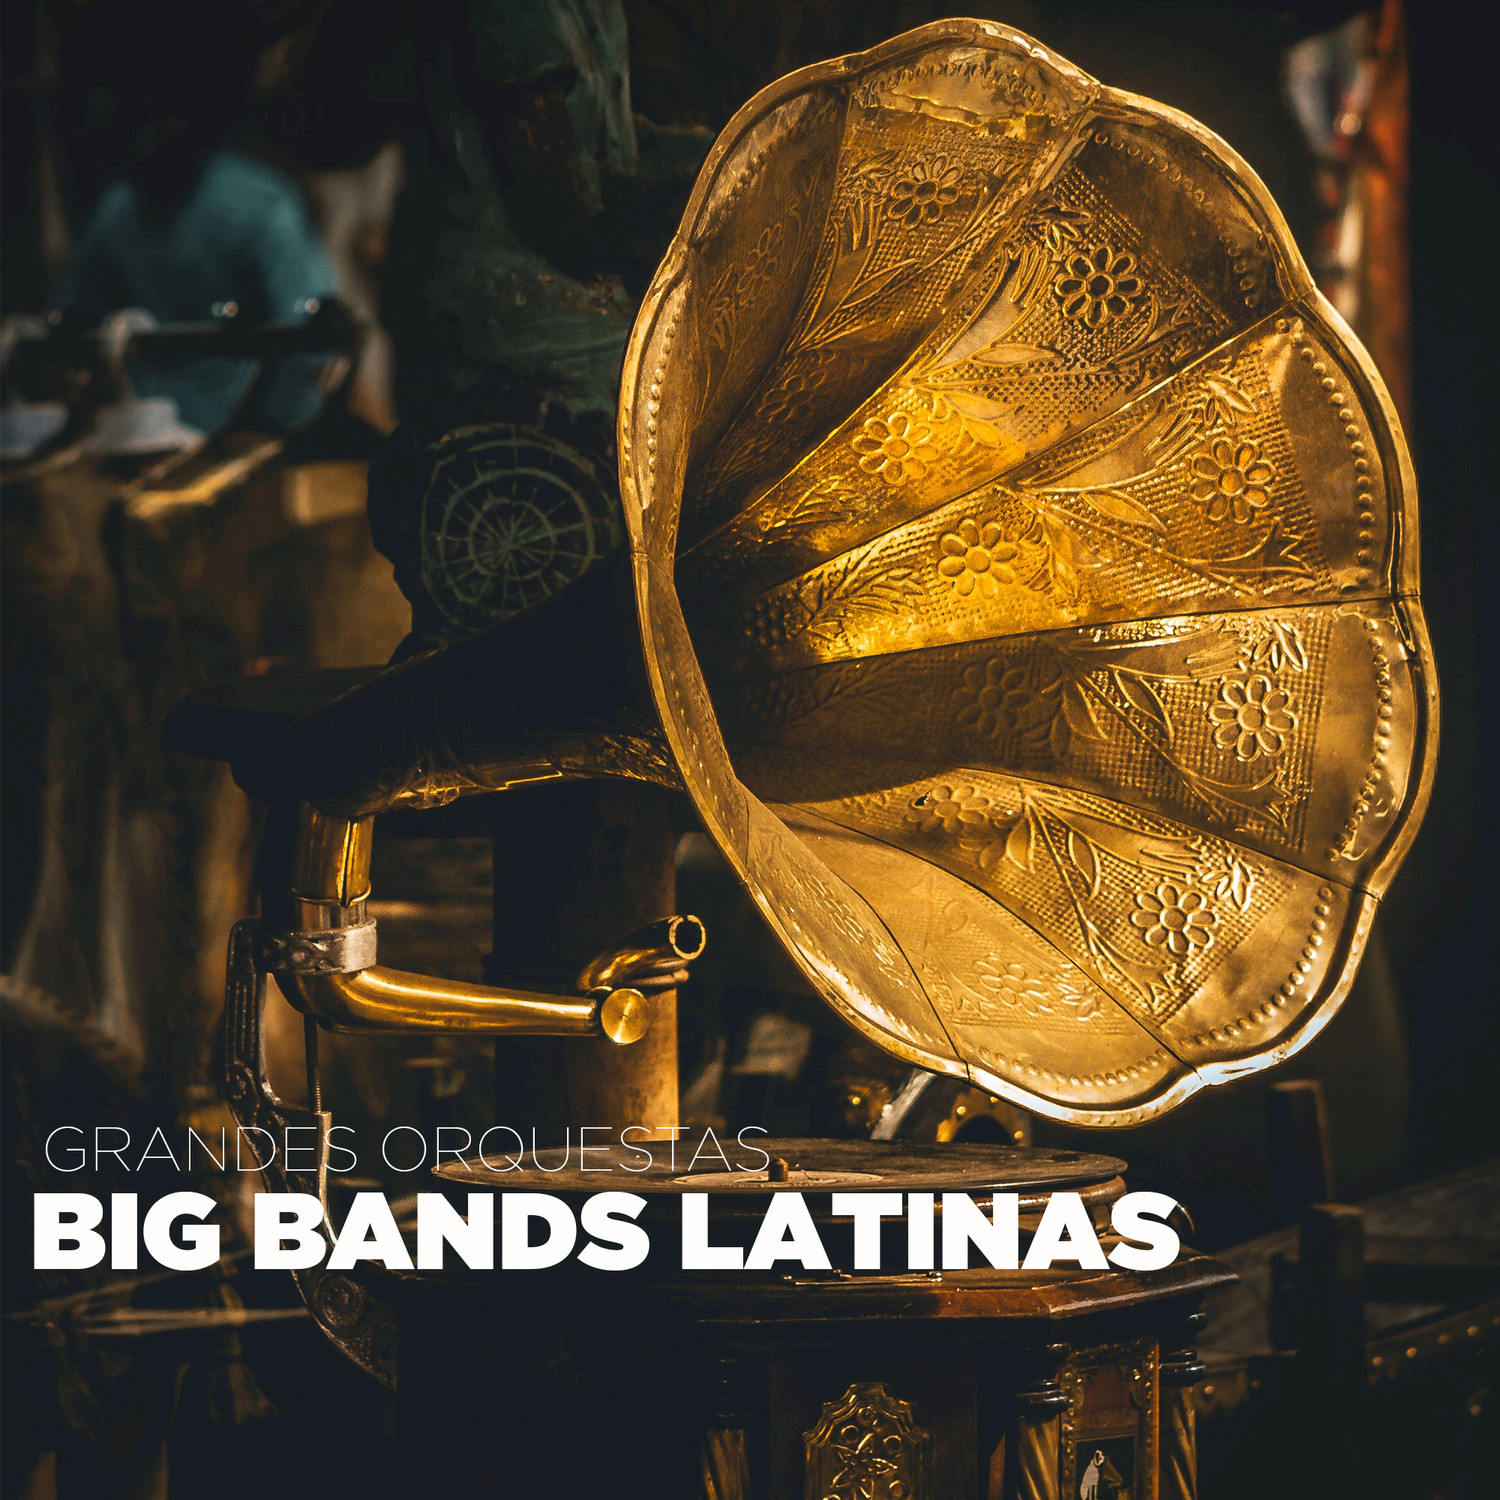 Big Bands Latinas (Grandes Orquestas)